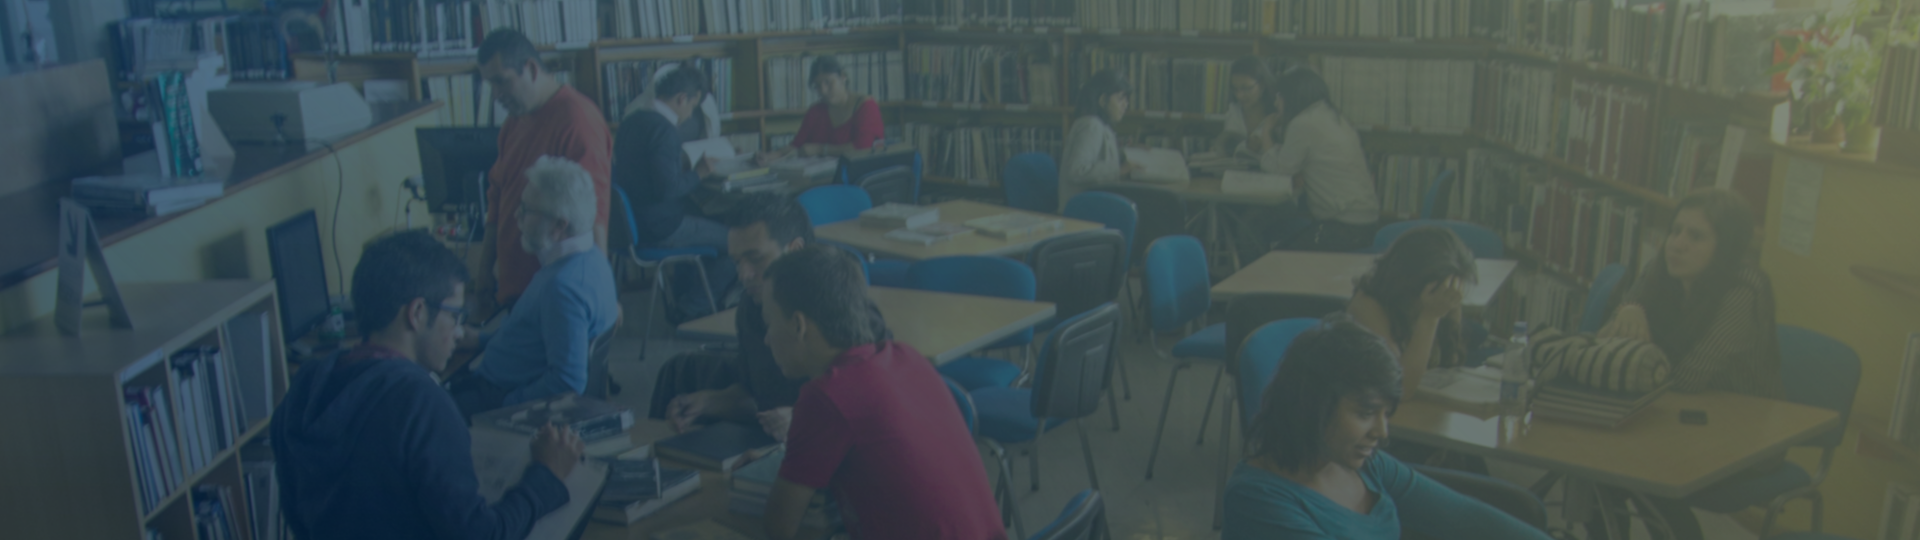 Grupo de personas estudiando en la biblioteca de la sede Palogrande de la Universidad de Caldas